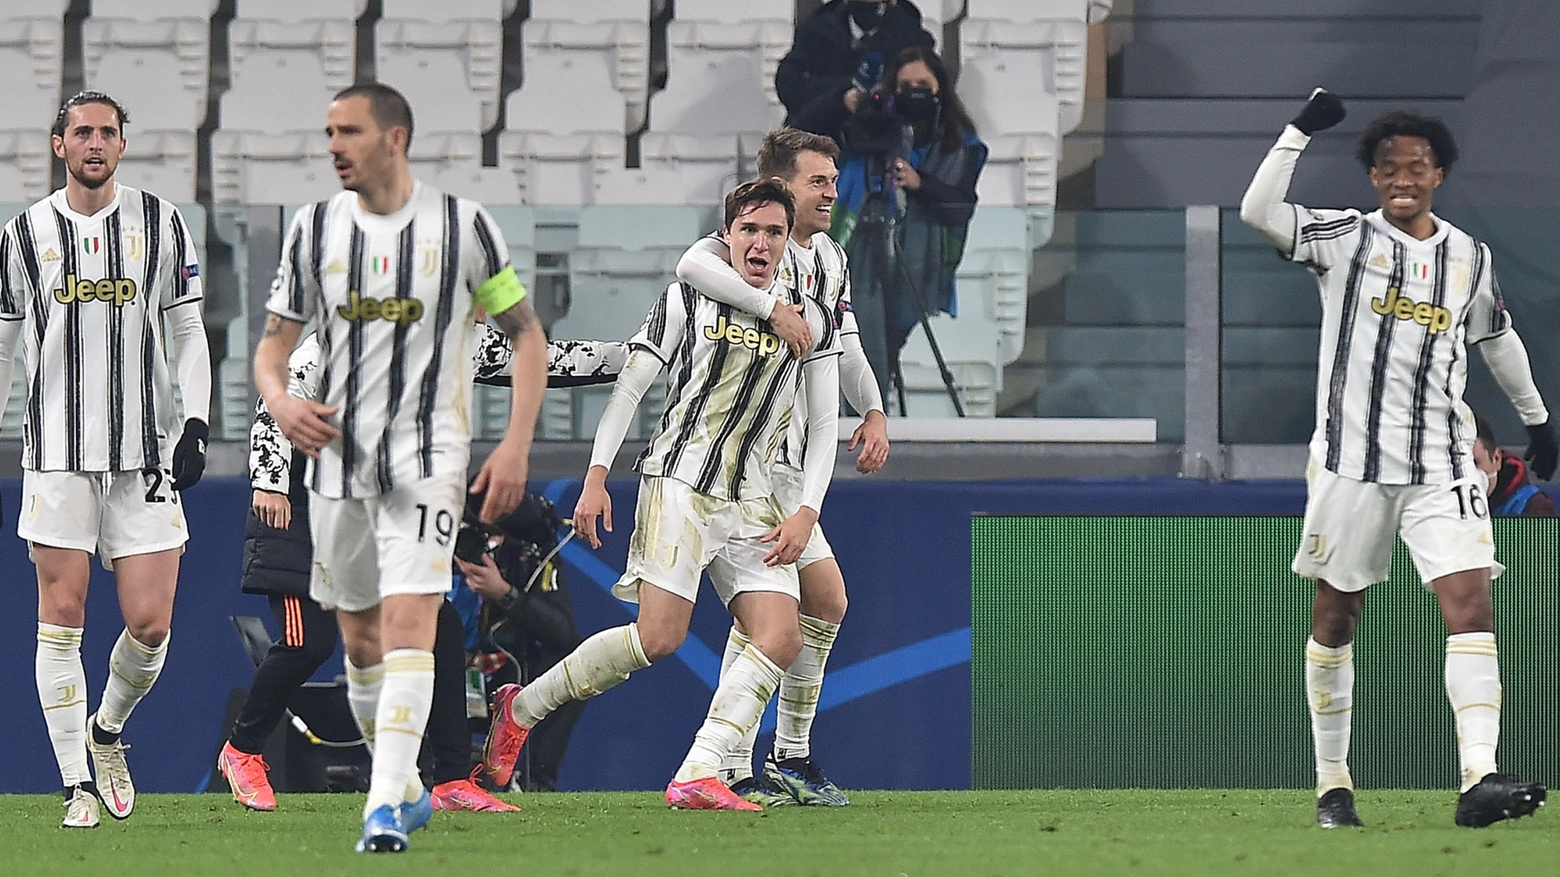 Federico Chiesa continua a trascinare la Juventus a suon di gol